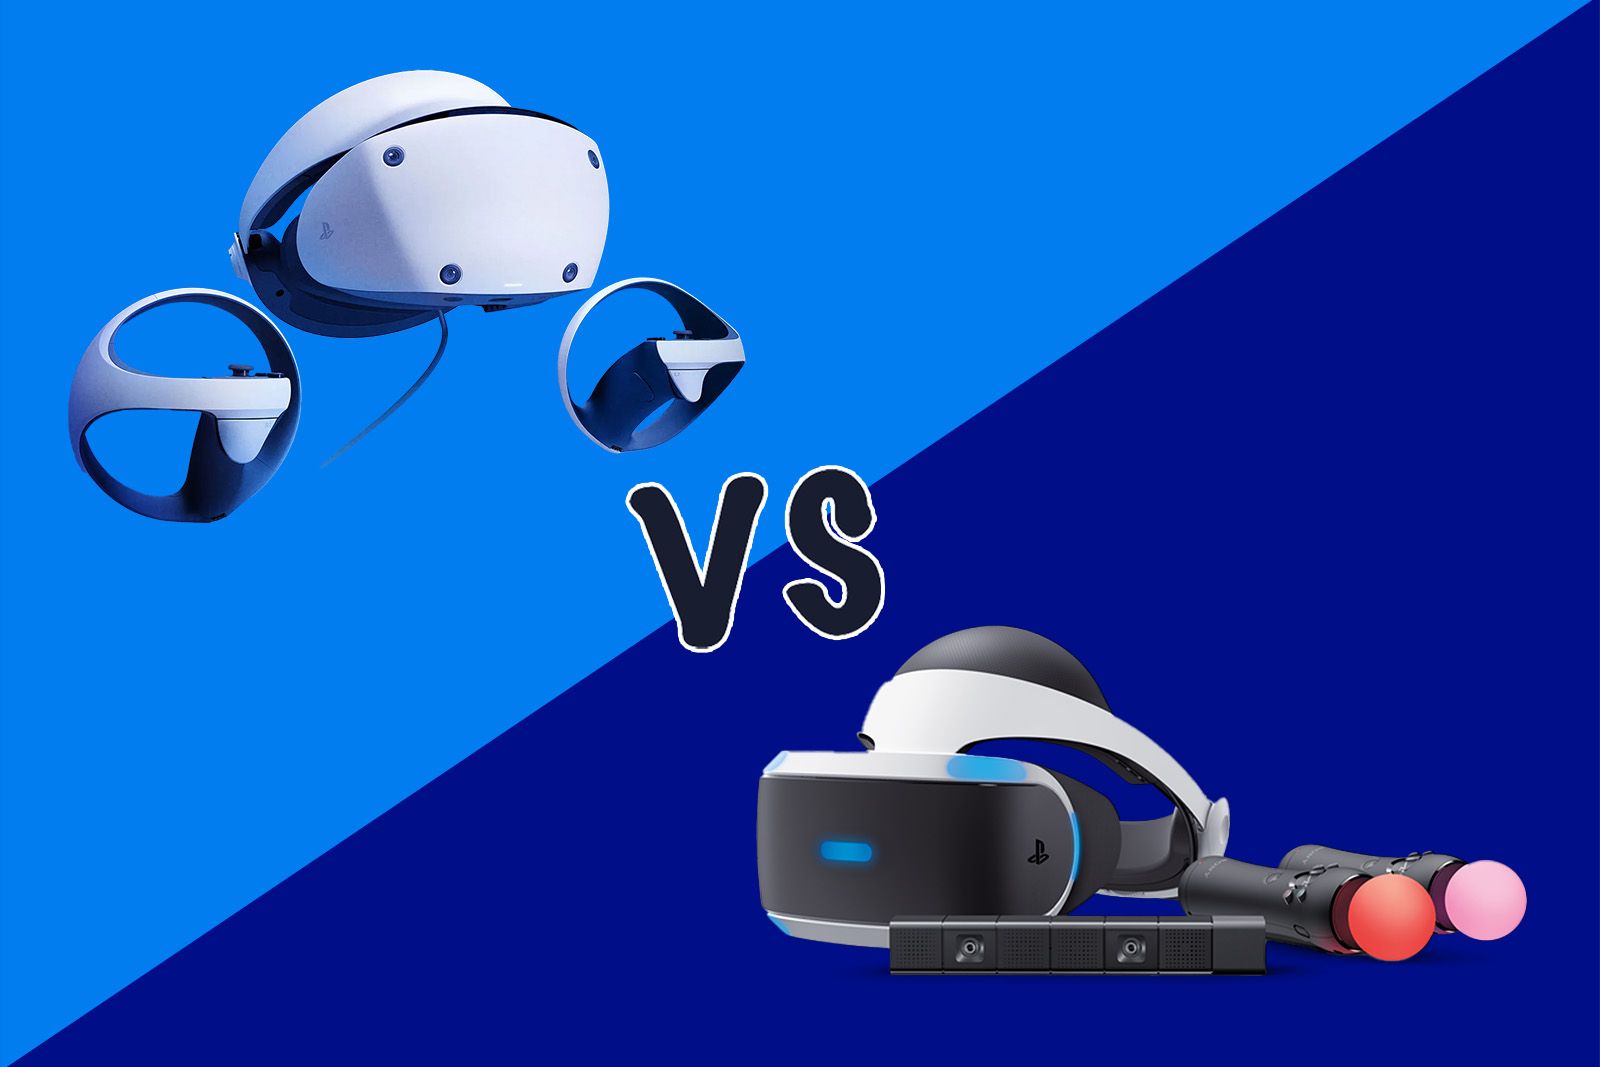 PSVR 2 vs. PSVR 1 – Specs Comparison & New Features